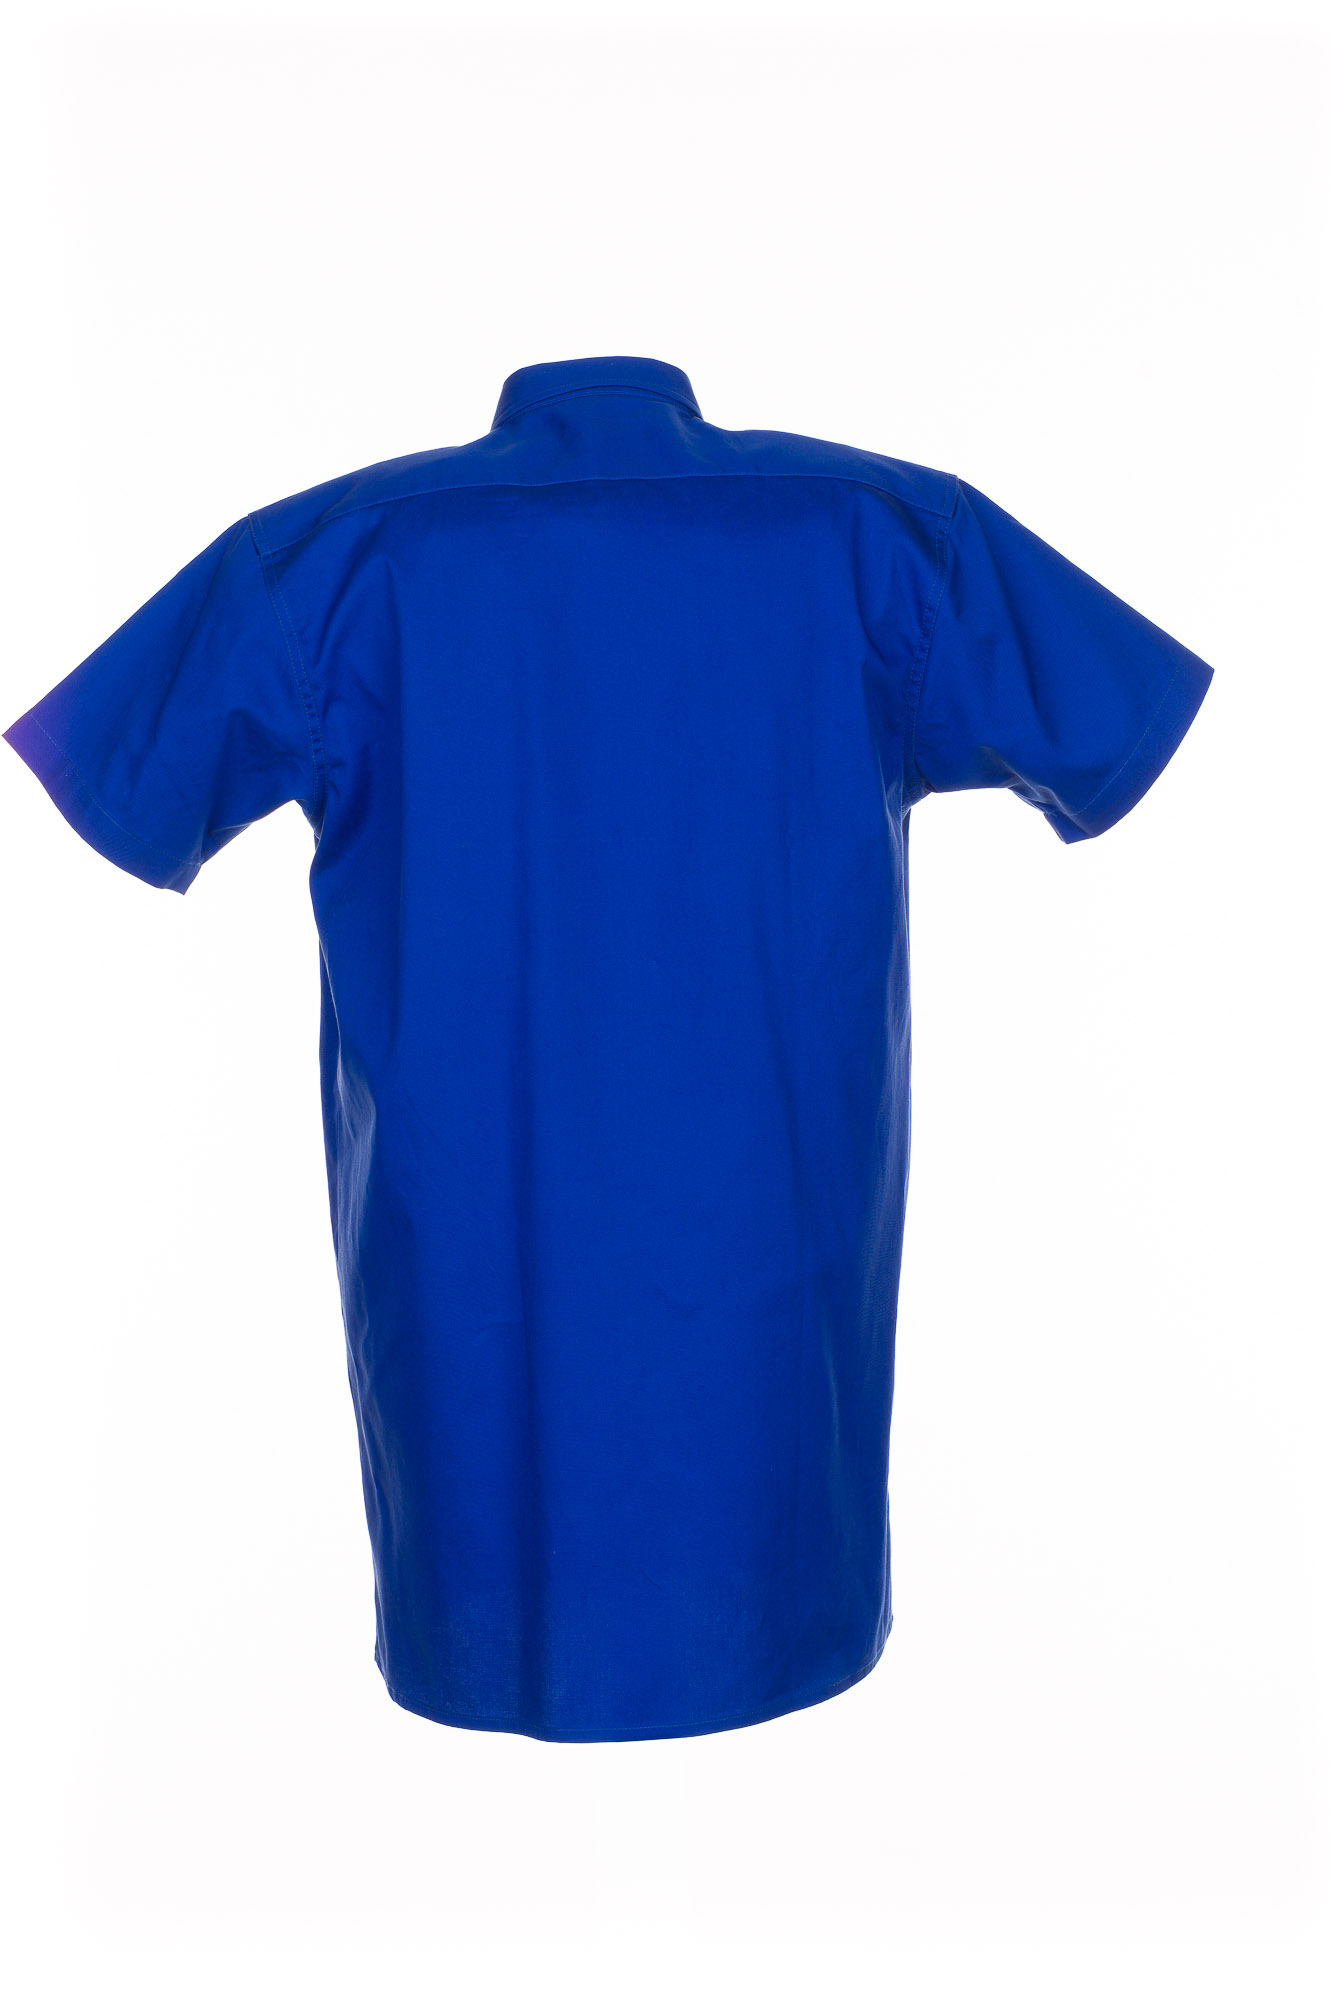 Planam Köperhemd 1/4 kurzarm Arbeitshemd Größe 37/38 - 49/50, in 4 Farben